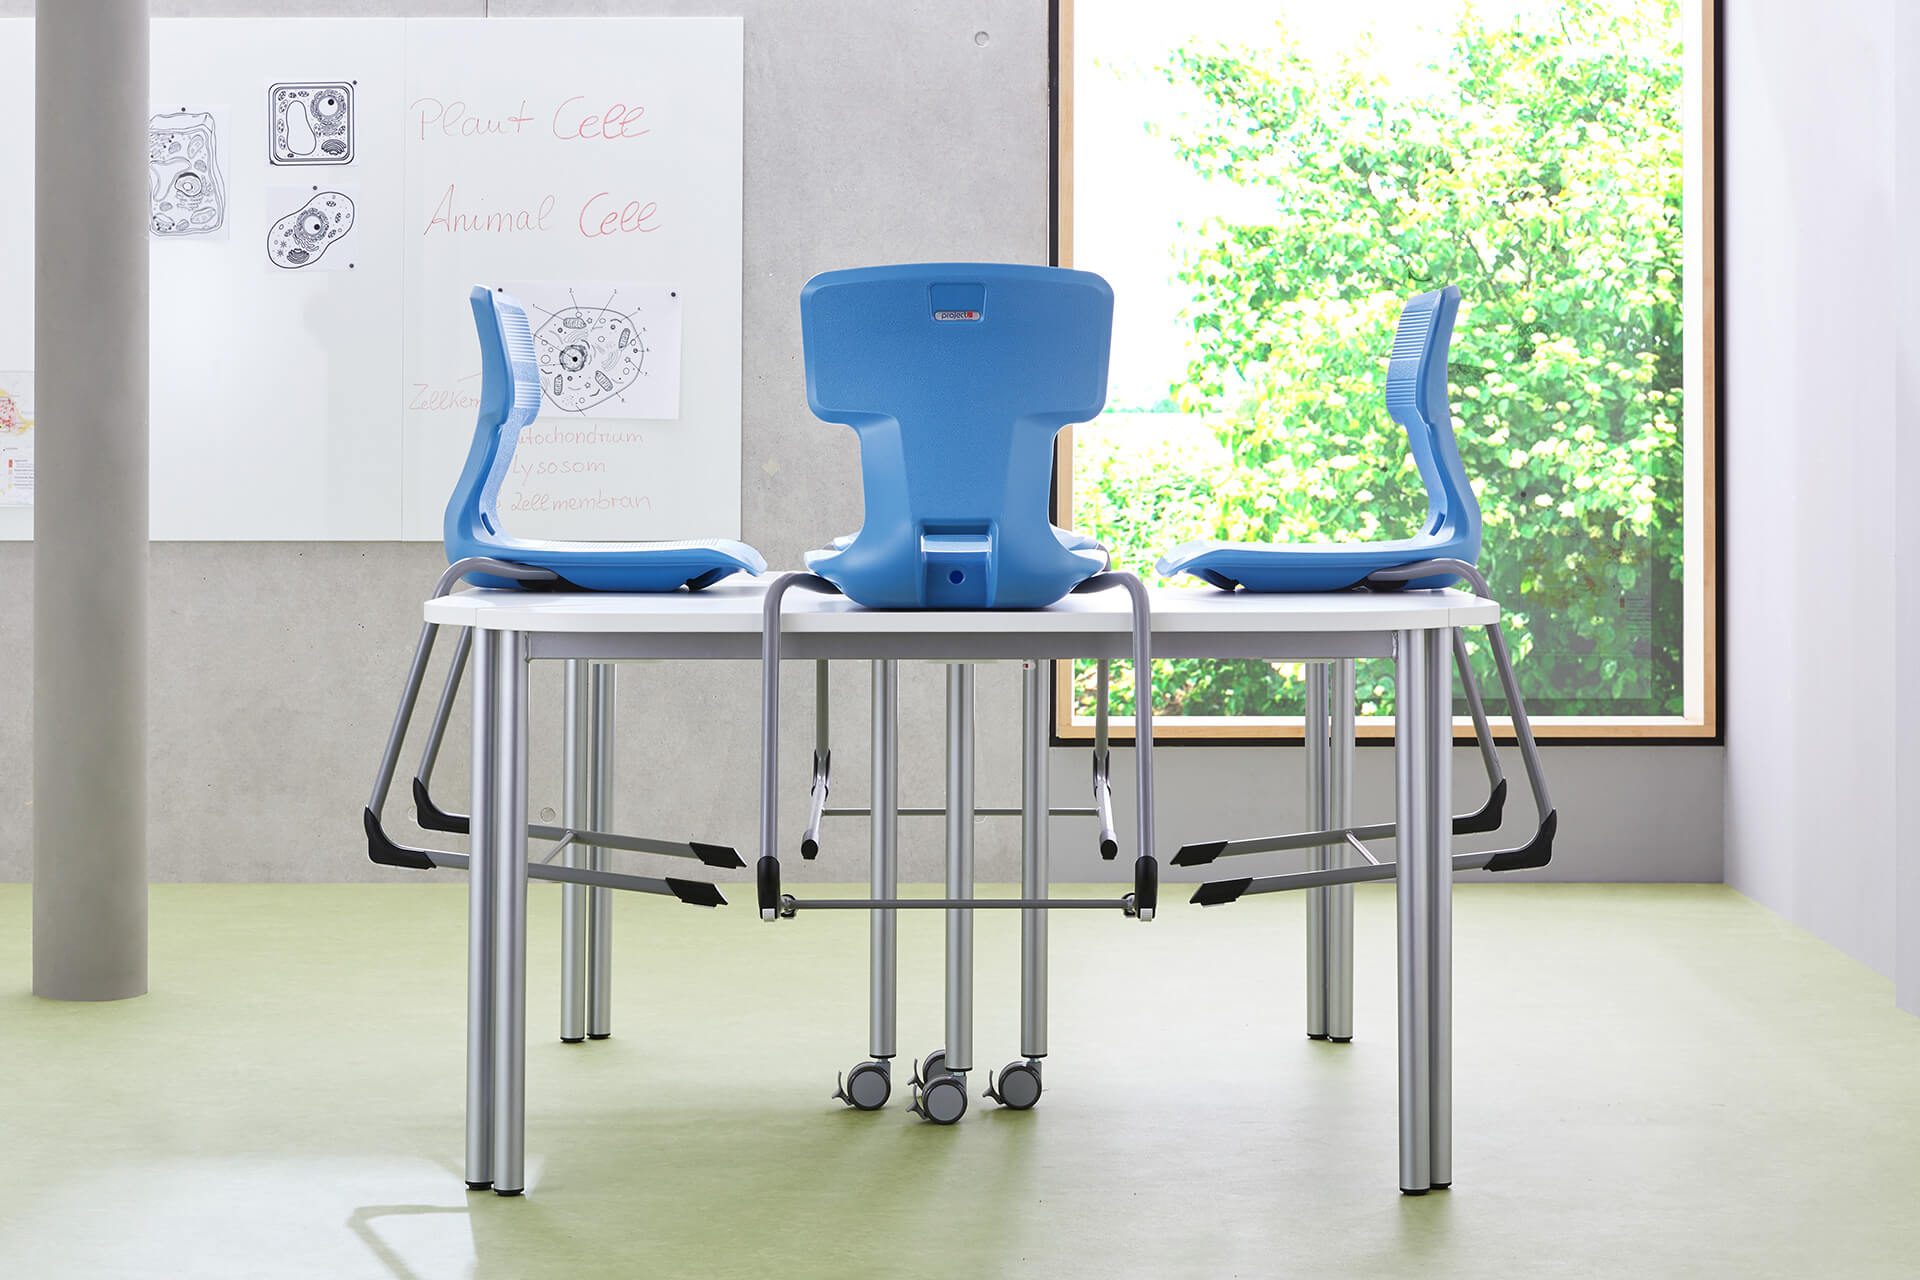 Lernraum | Stühle | Schwingstühle mit blauen Rück-, Sitzlehnen hochgestellt auf einem Tisch und stehen vor einem Fenster